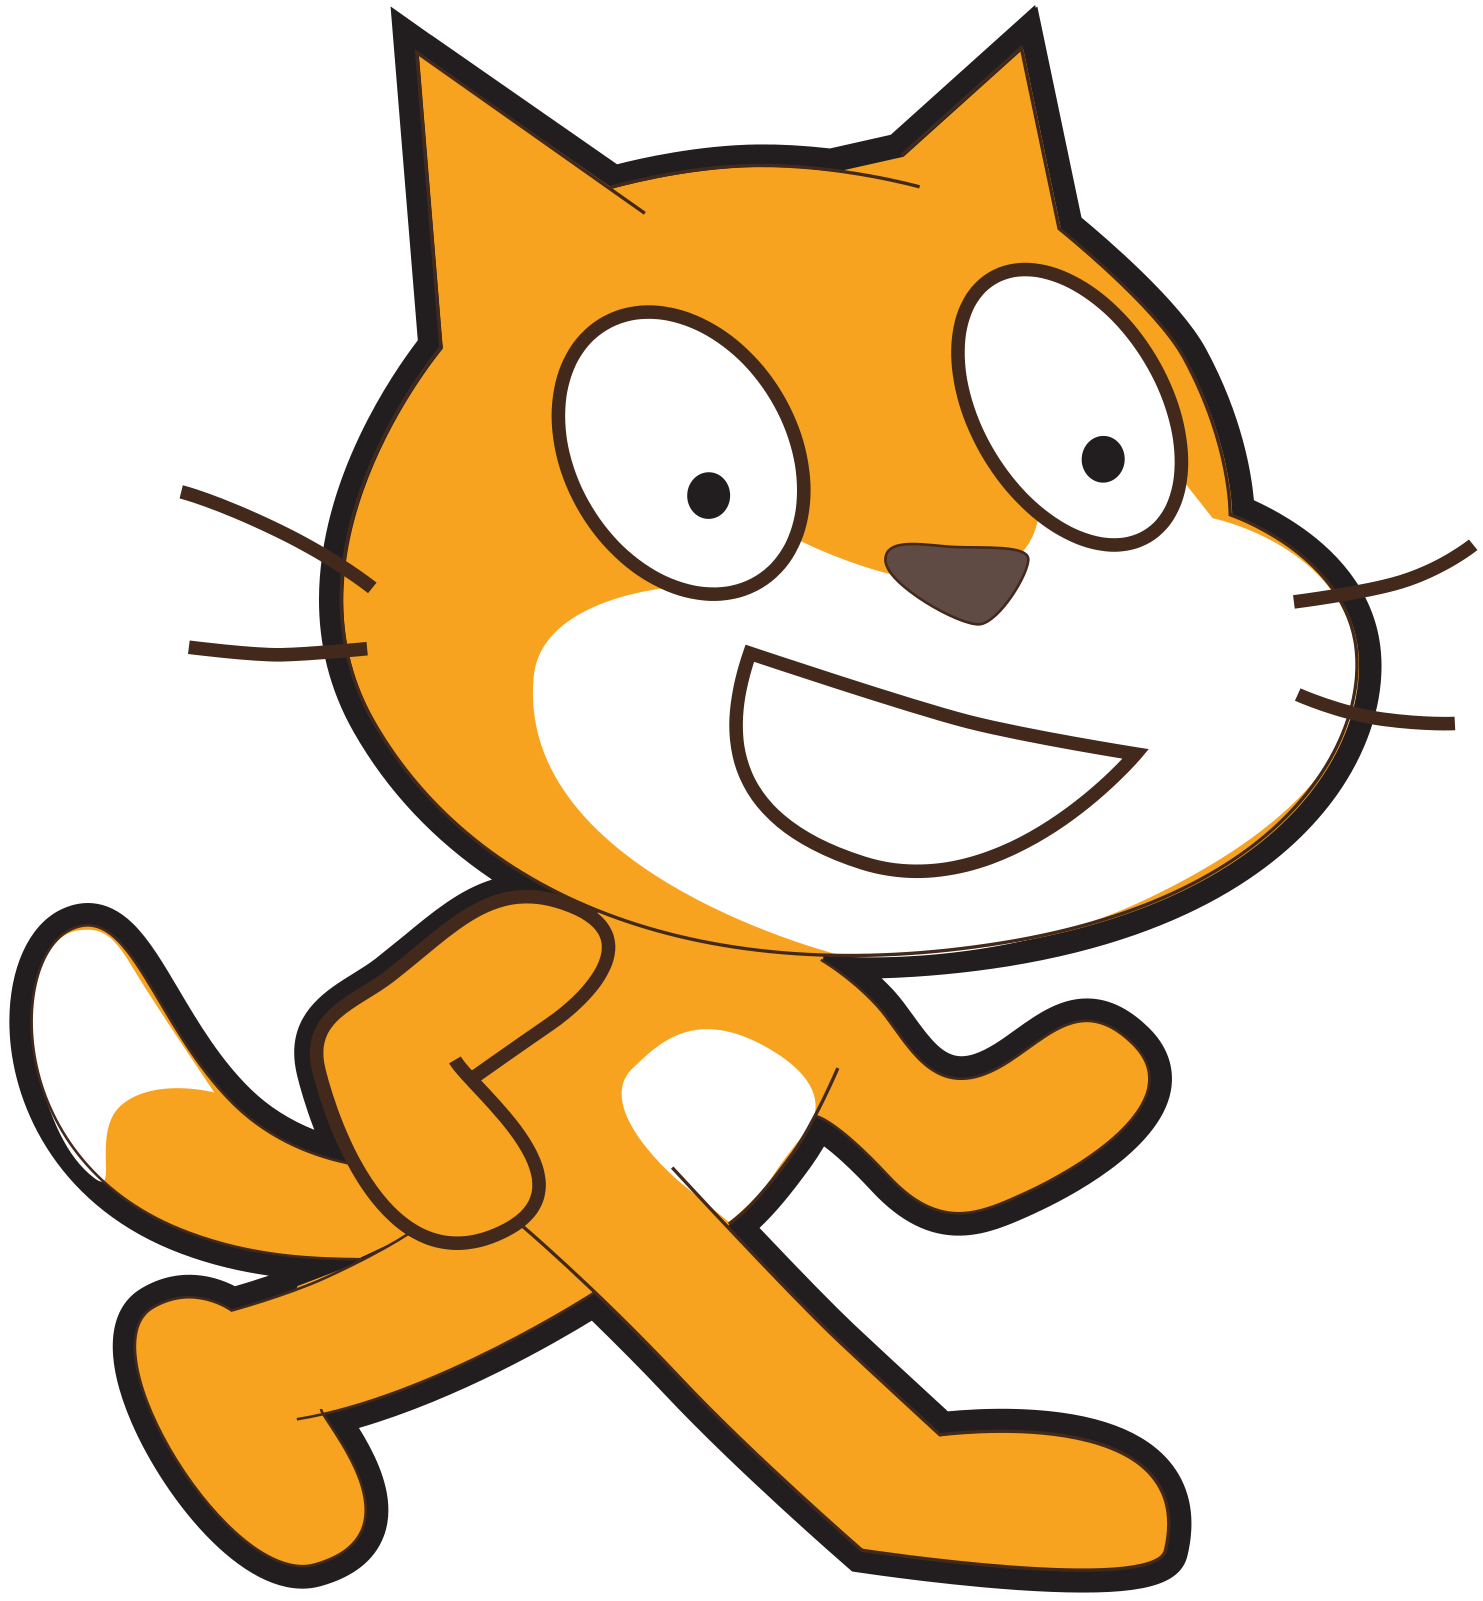 scratch cat logo